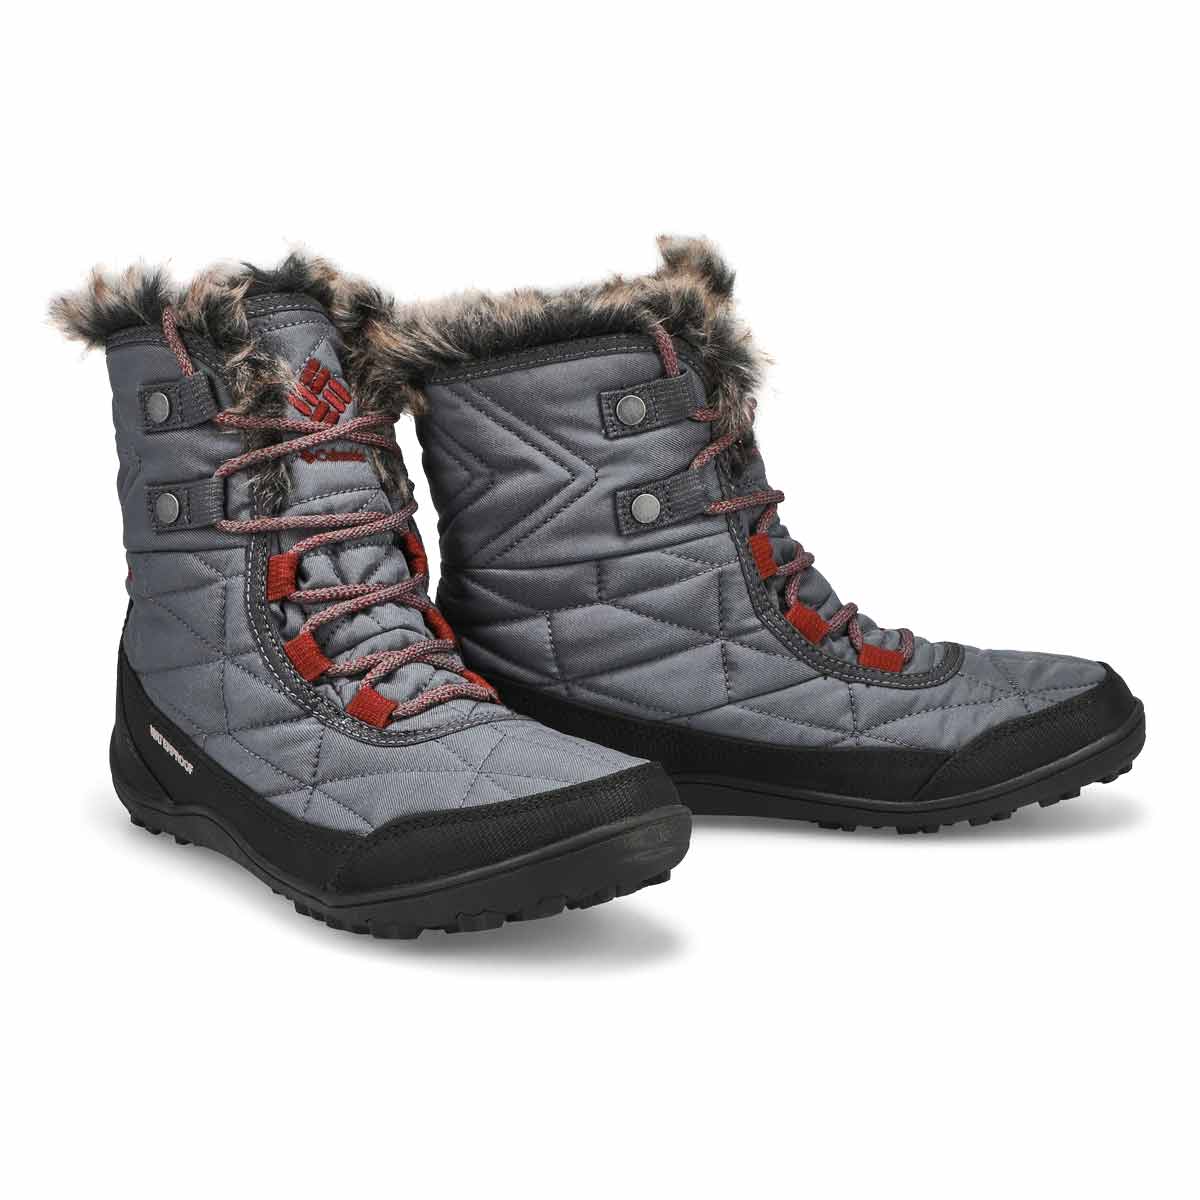 Women's Minx Shorty III Waterproof Winter Boot - Graphite